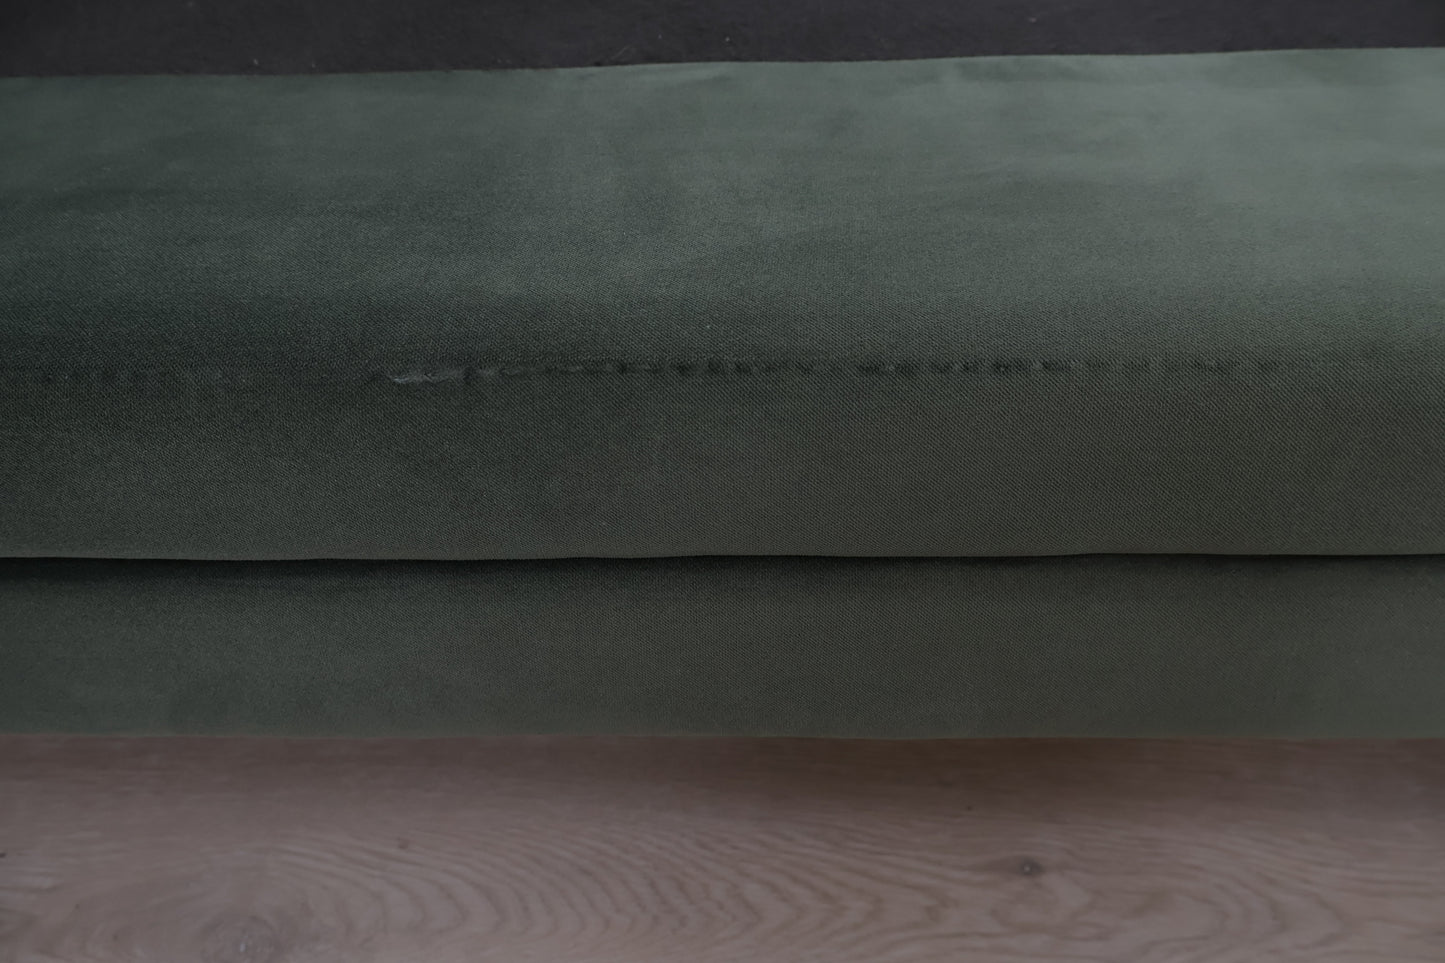 Nyrenset | Grønn Stage 3-seter sofa i velur fra Home & Cottage